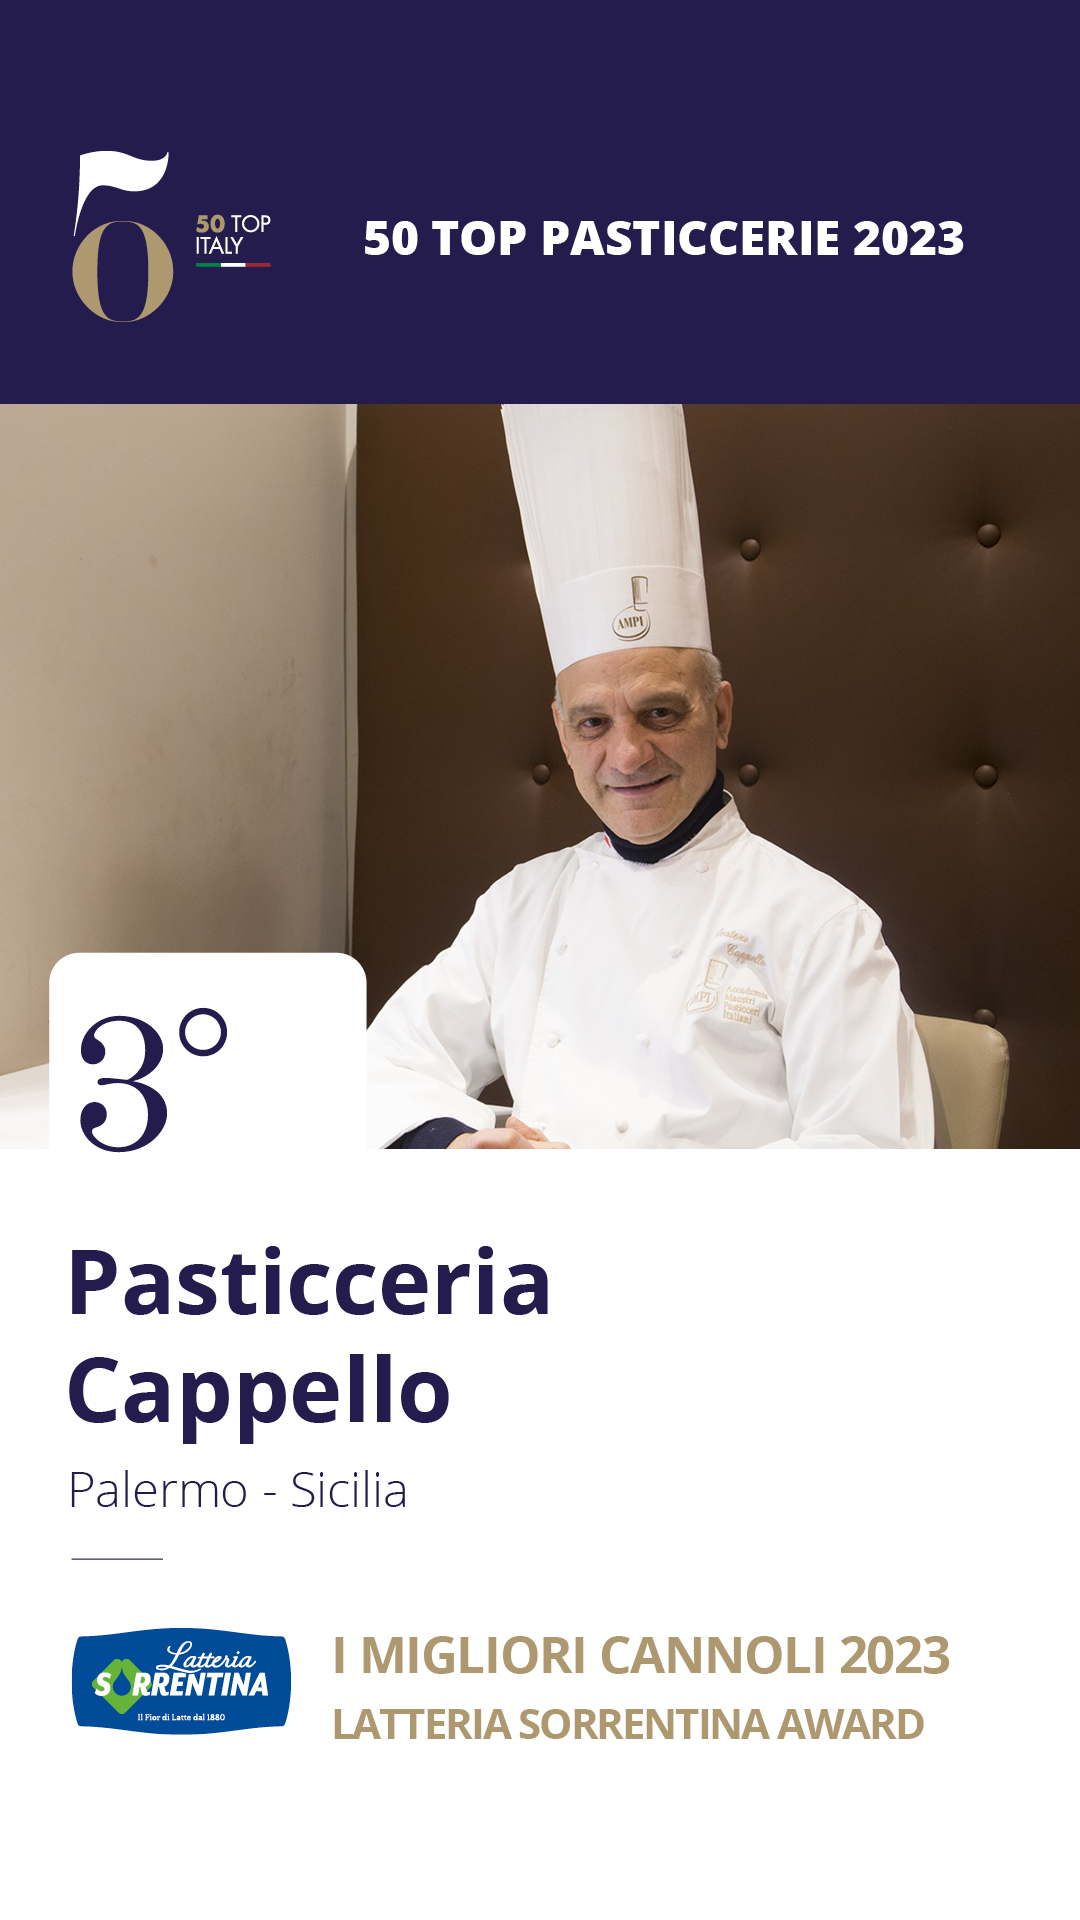 3 - Pasticceria Cappello - Palermo, Sicilia